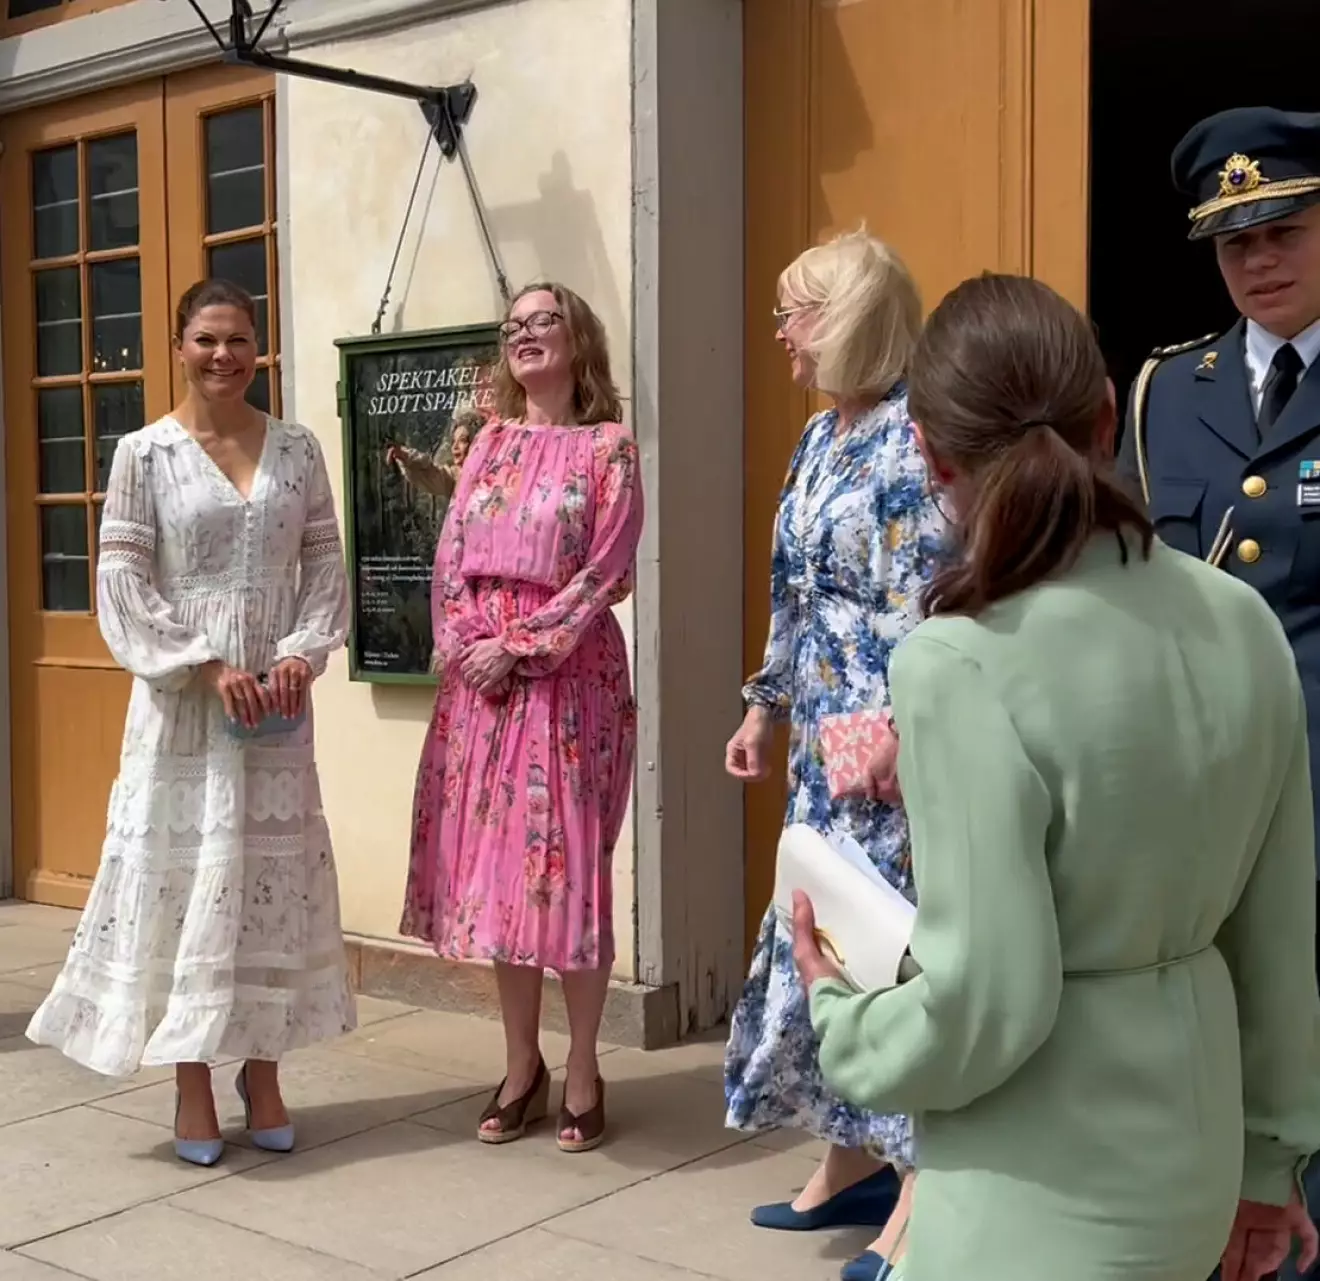 Kronprinsessan Victoria på Drottningholms slottsteater med teaterchefen Anna Karinsdotter och ordföranden Karin Forseke